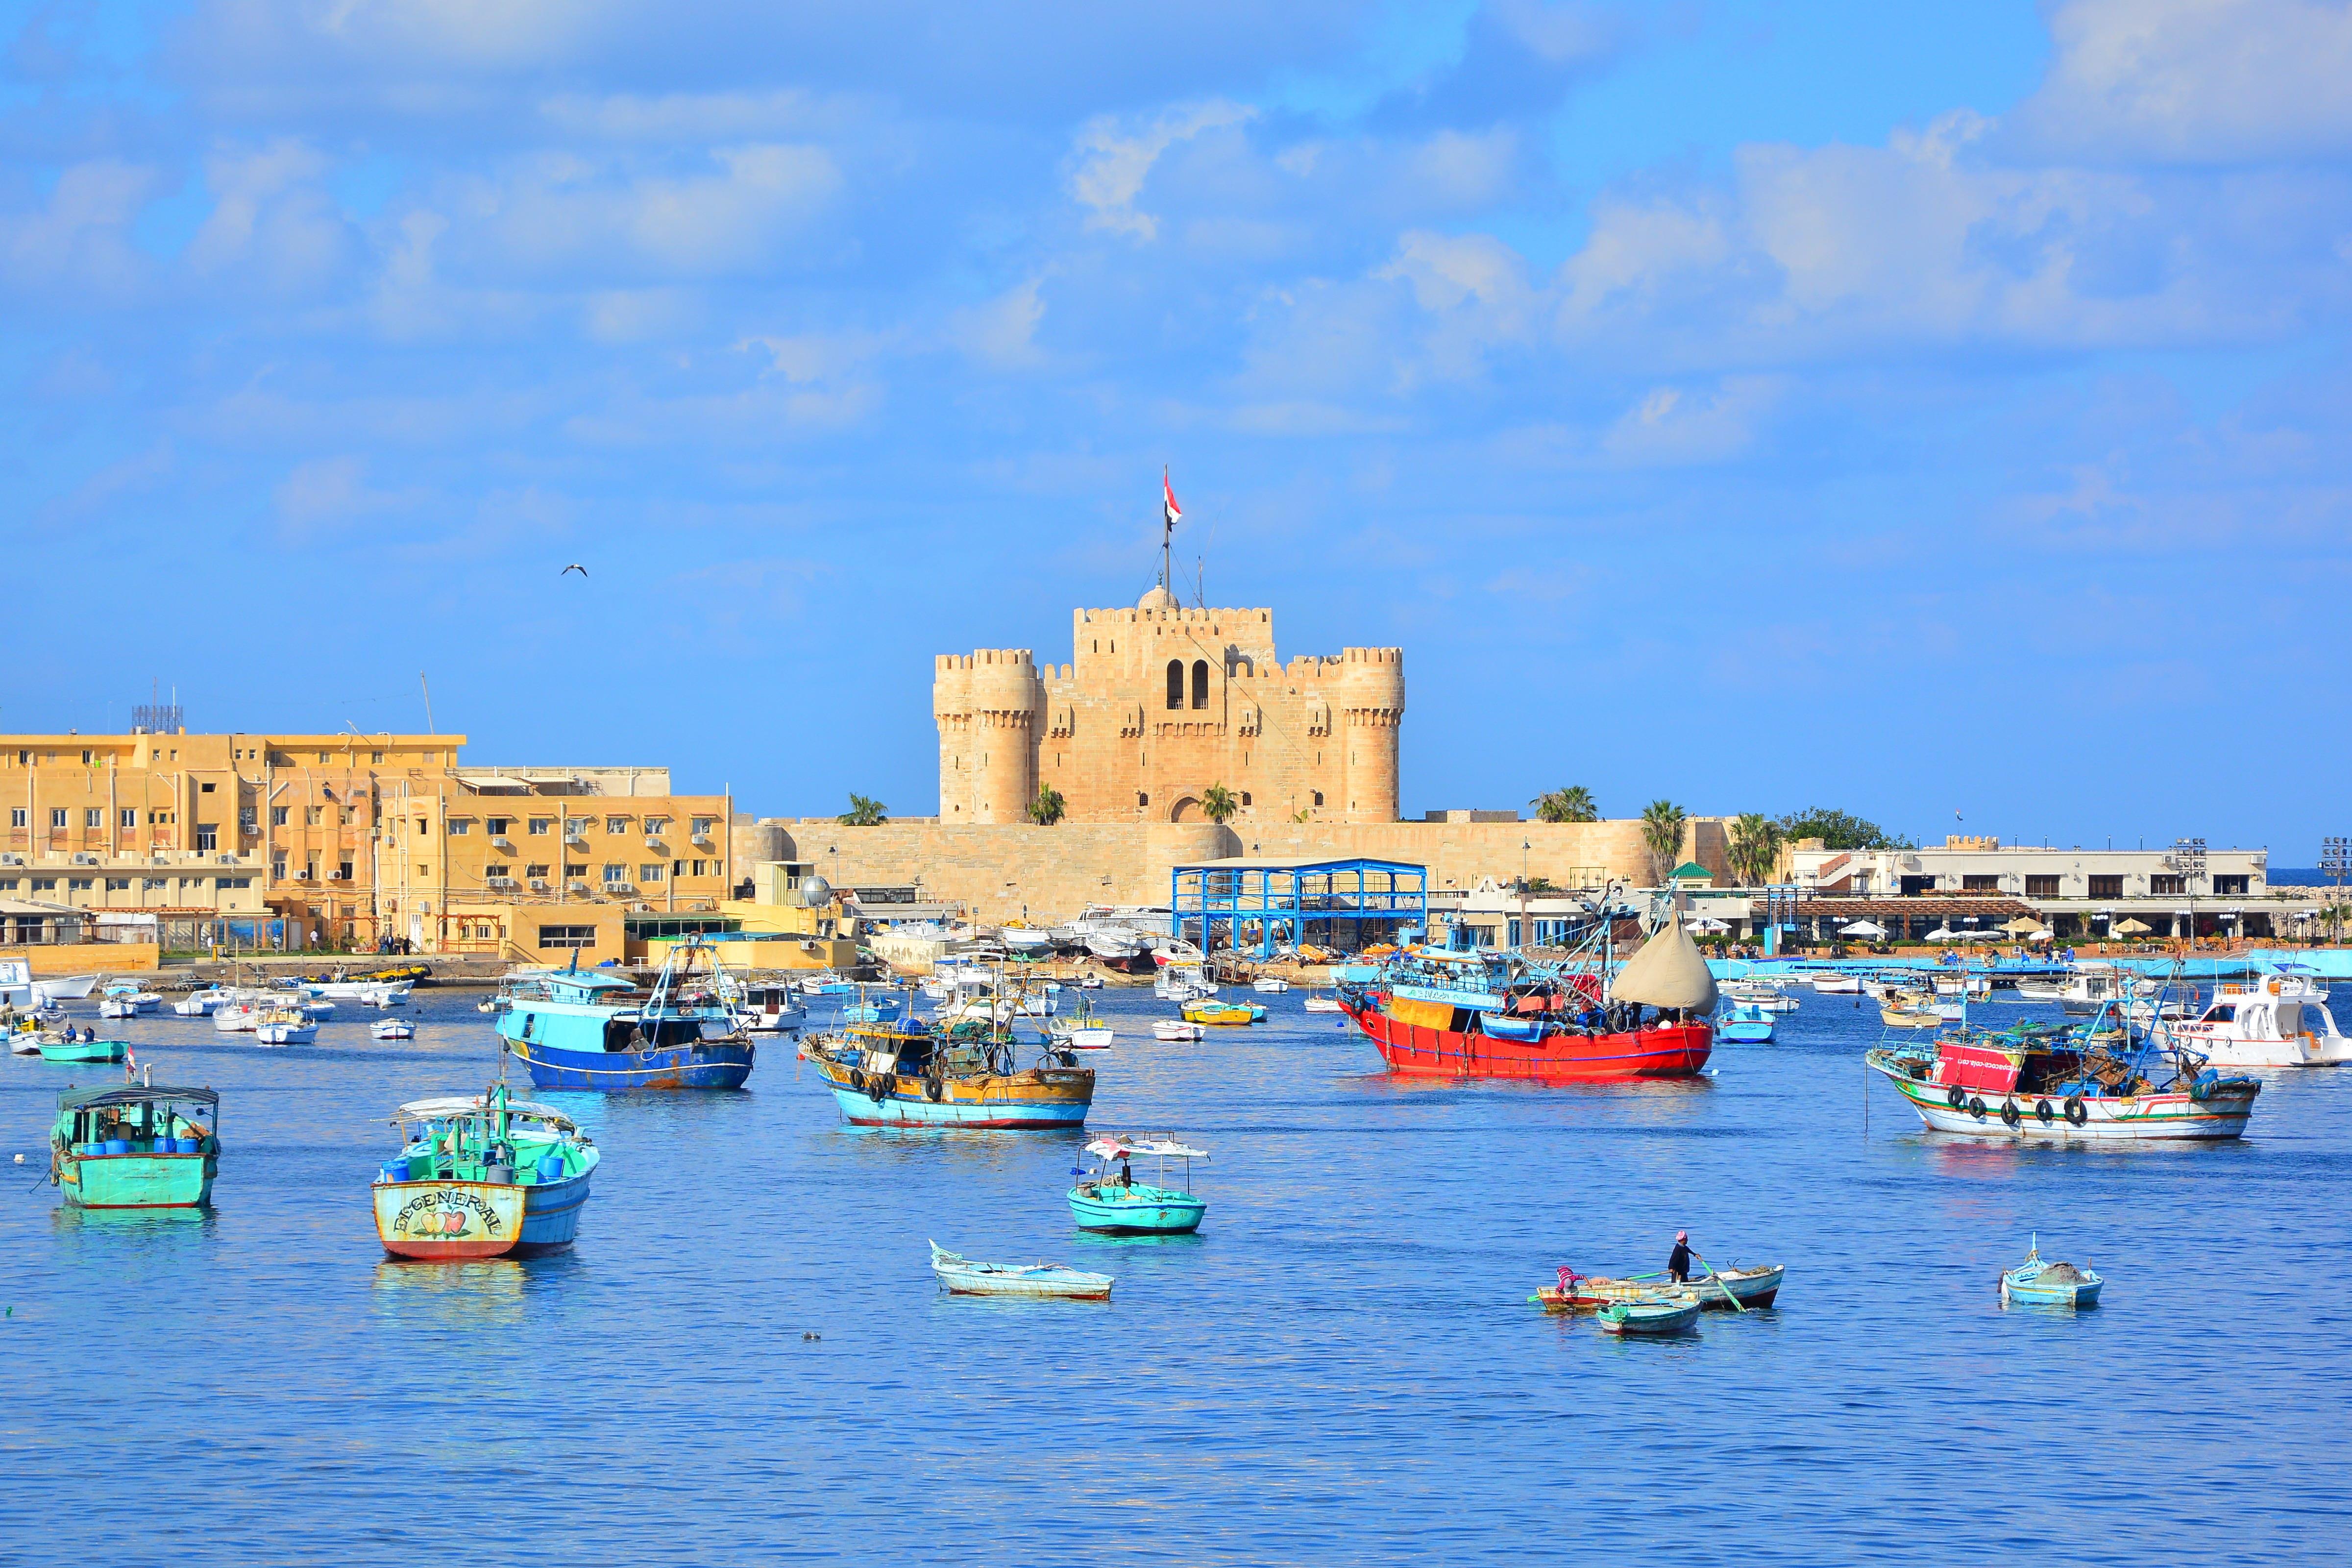 카이트베이 요새  The Citadel of Qaitbay